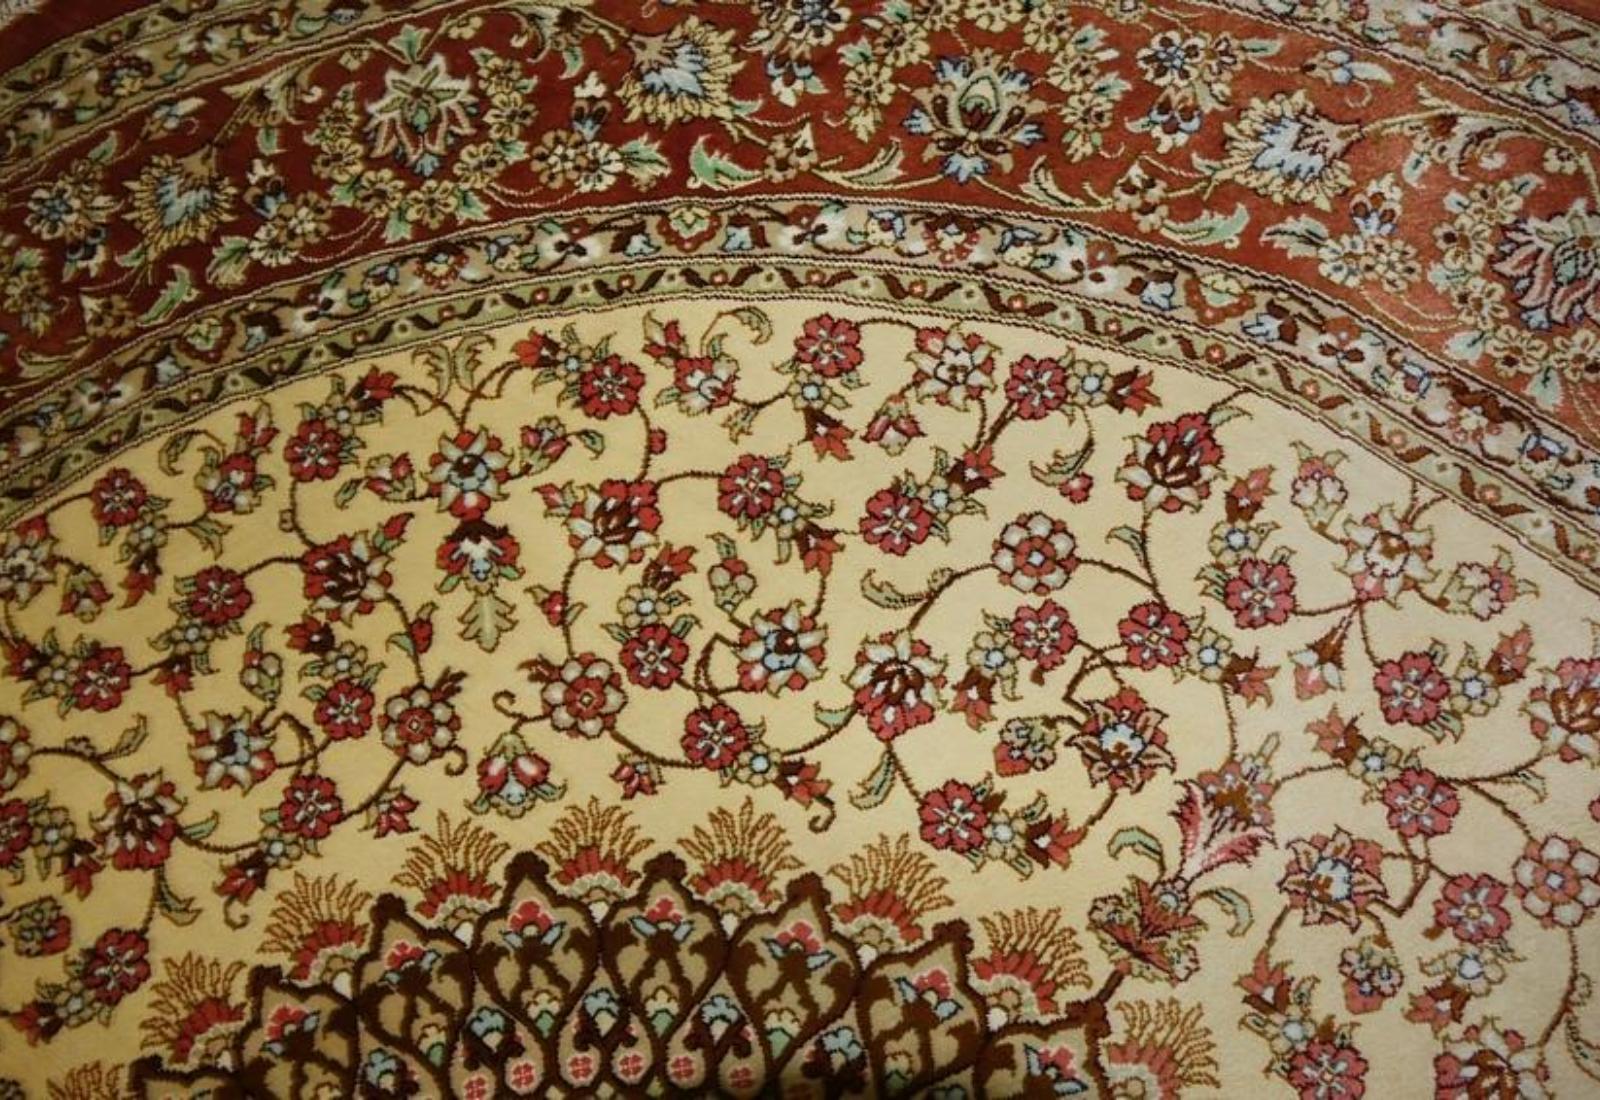 Very fine Persian Silk Qum - 5' 5' For Sale 1